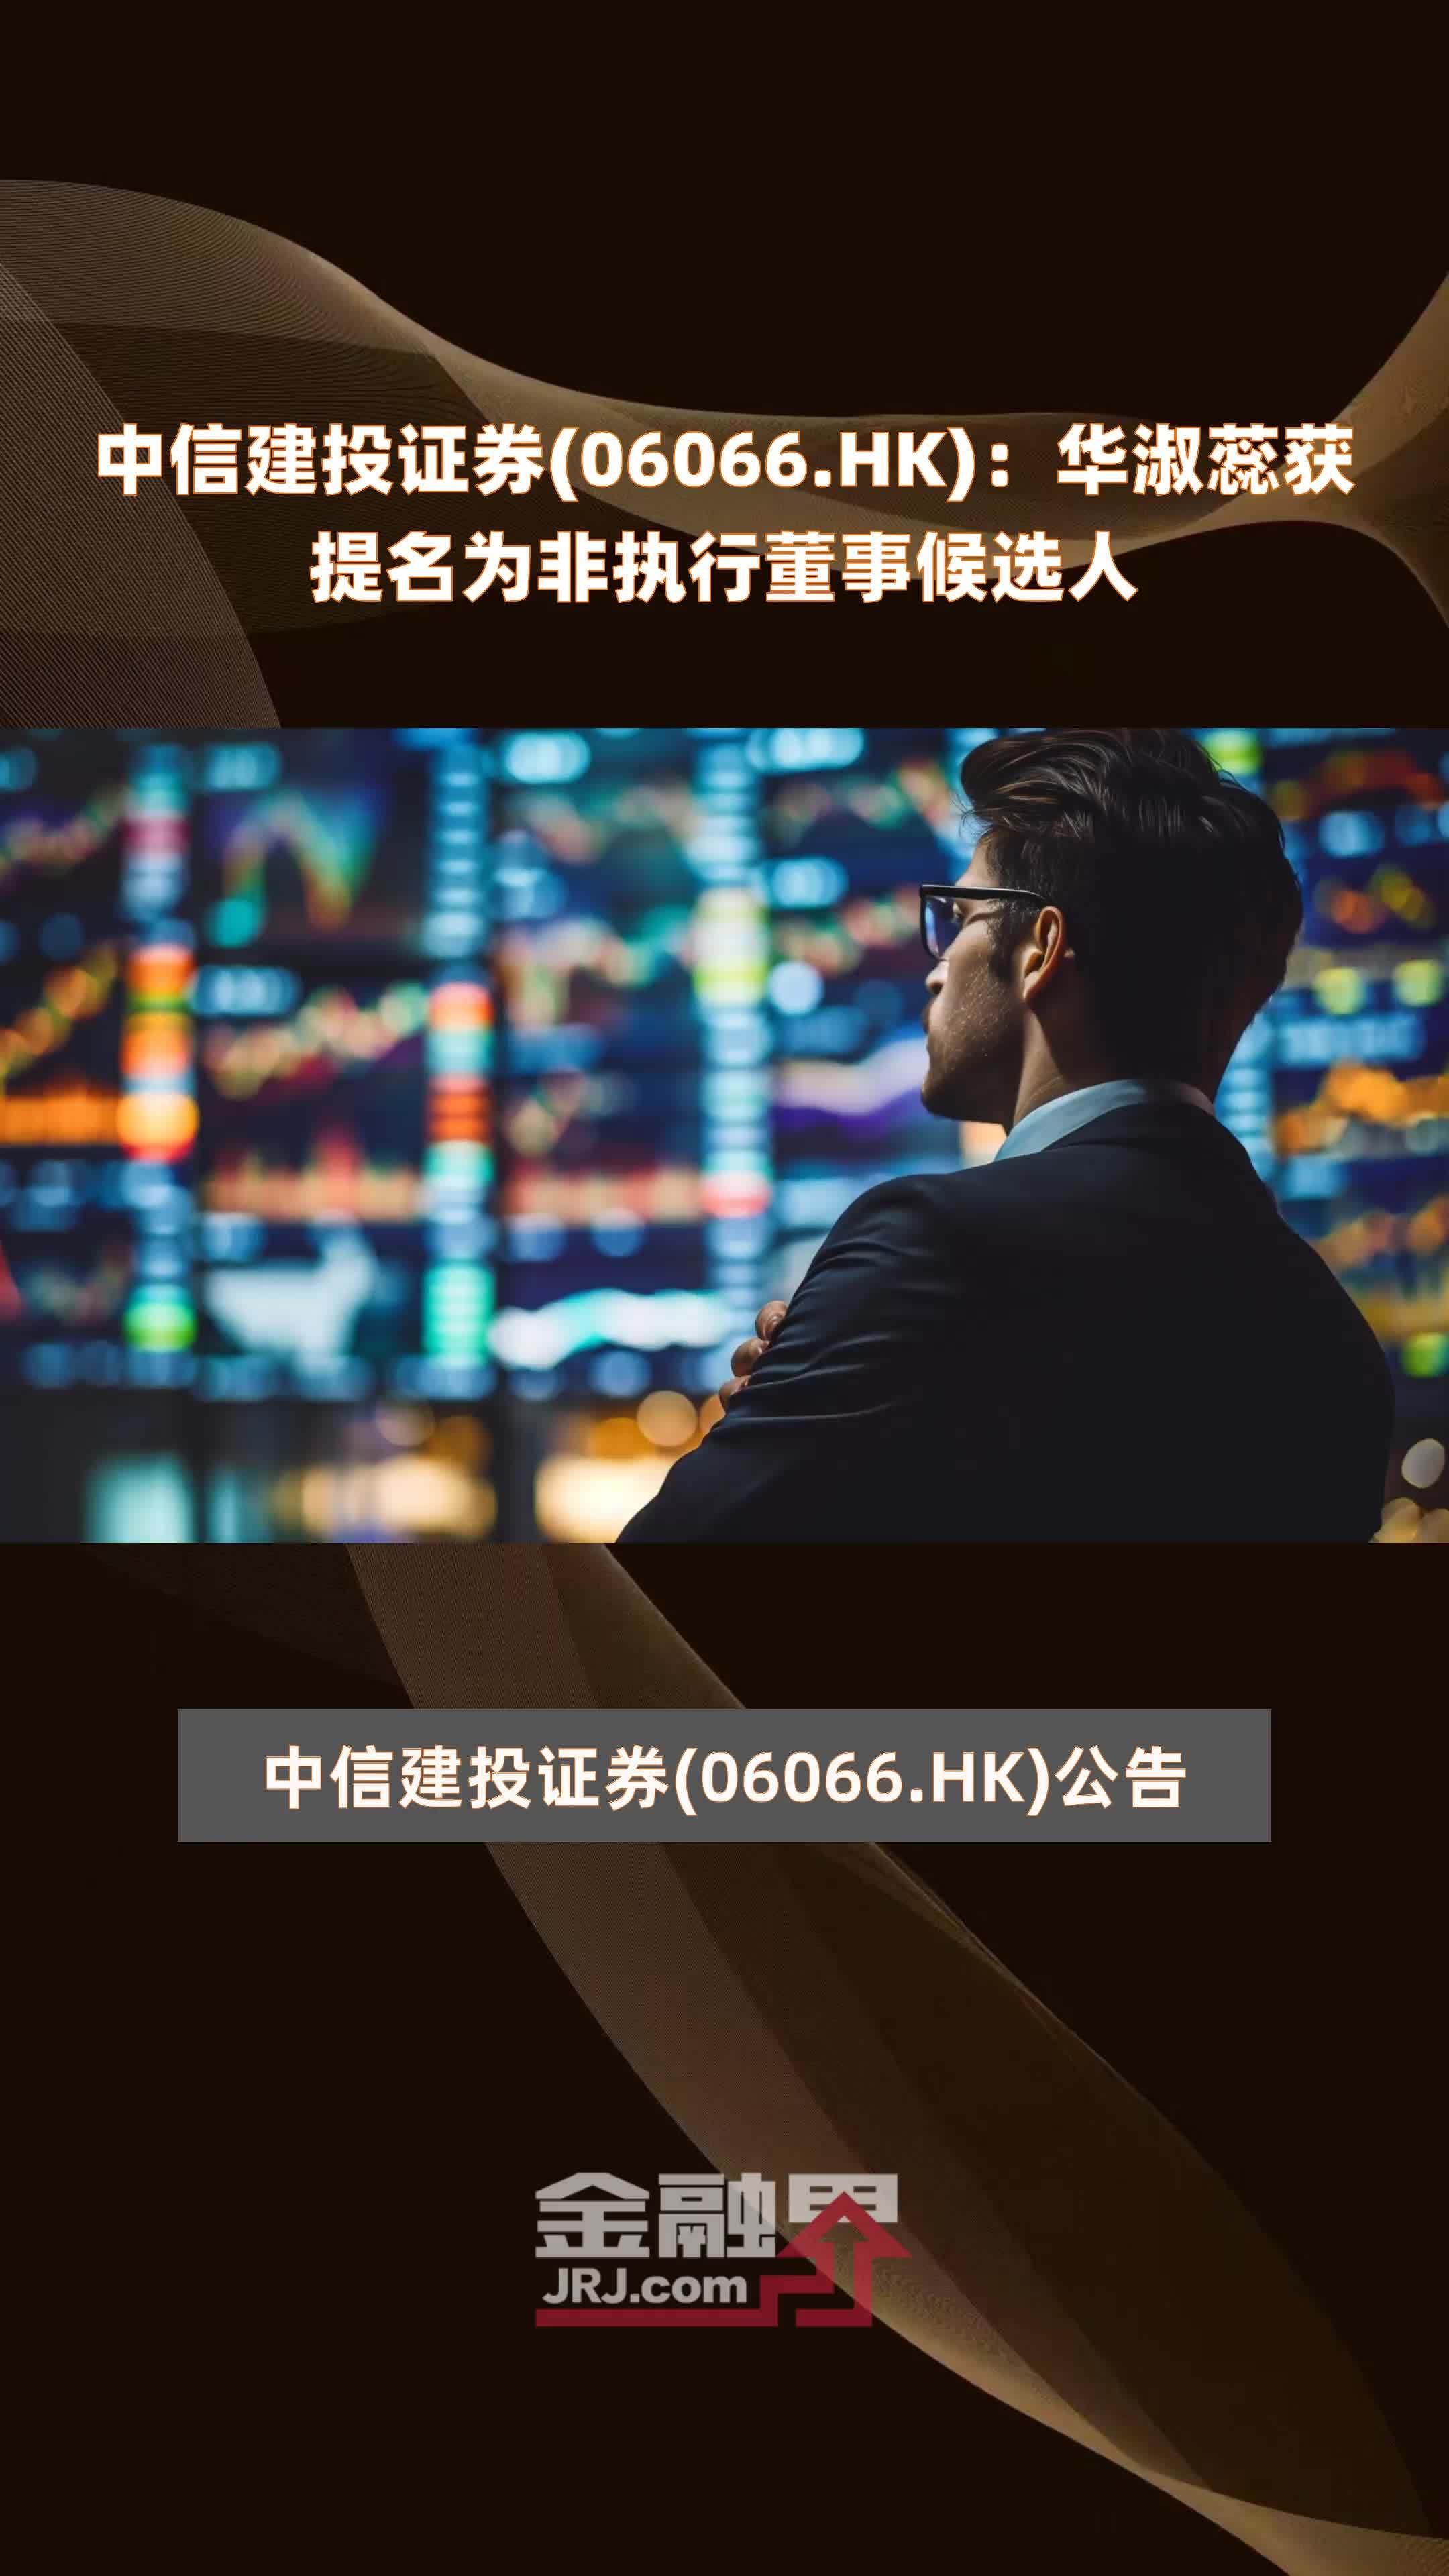 中信建投证券(06066.HK)：华淑蕊获提名为非执行董事候选人 |快报